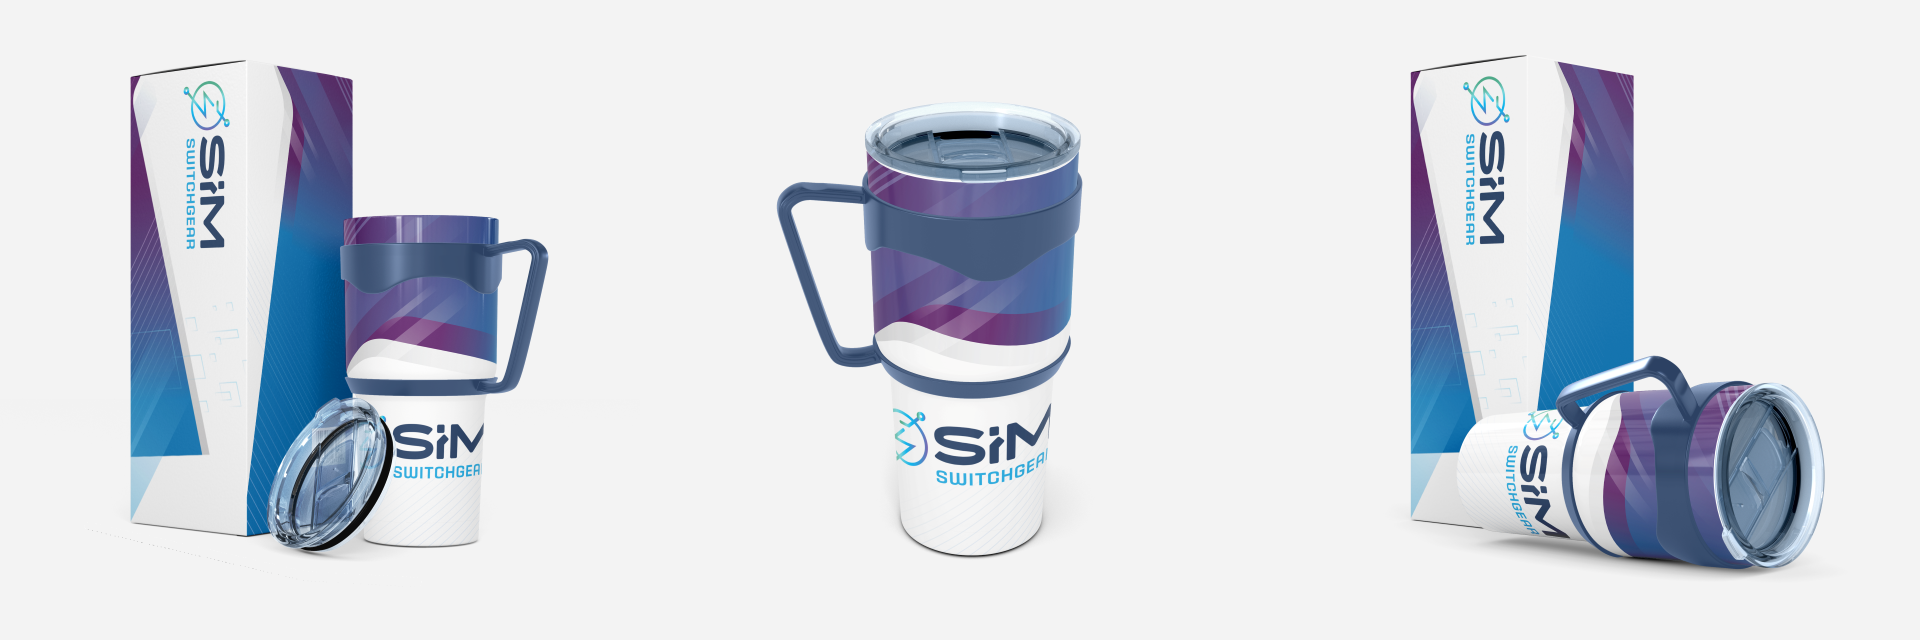 SIM-Tumbler-1